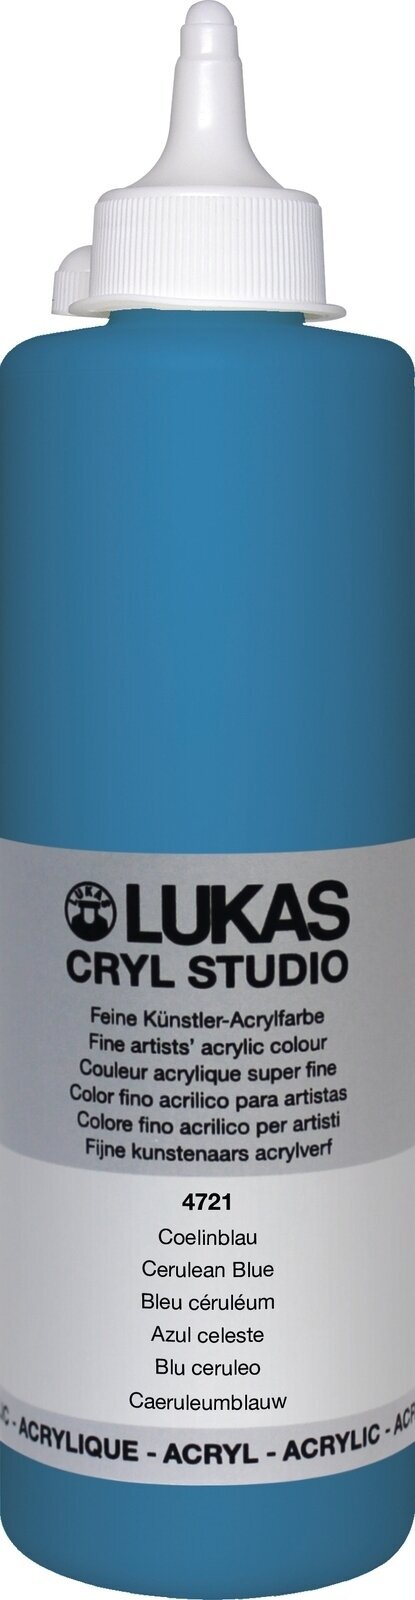 Peinture acrylique Lukas Cryl Studio Acrylic Paint Plastic Bottle Peinture acrylique Cerulean Blue 500 ml 1 pc